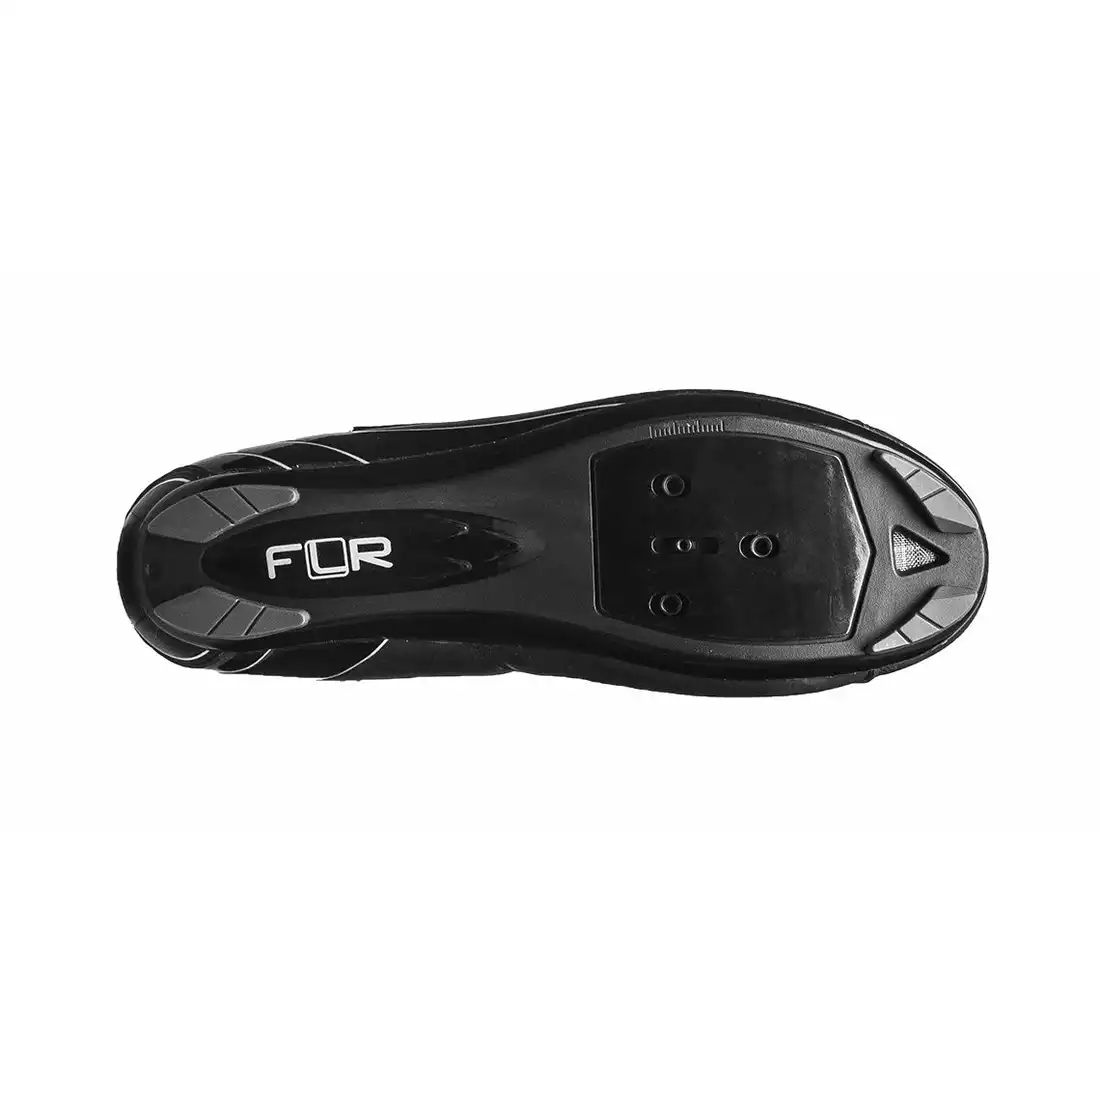 FLR F-35 szosowe buty rowerowe, czarne